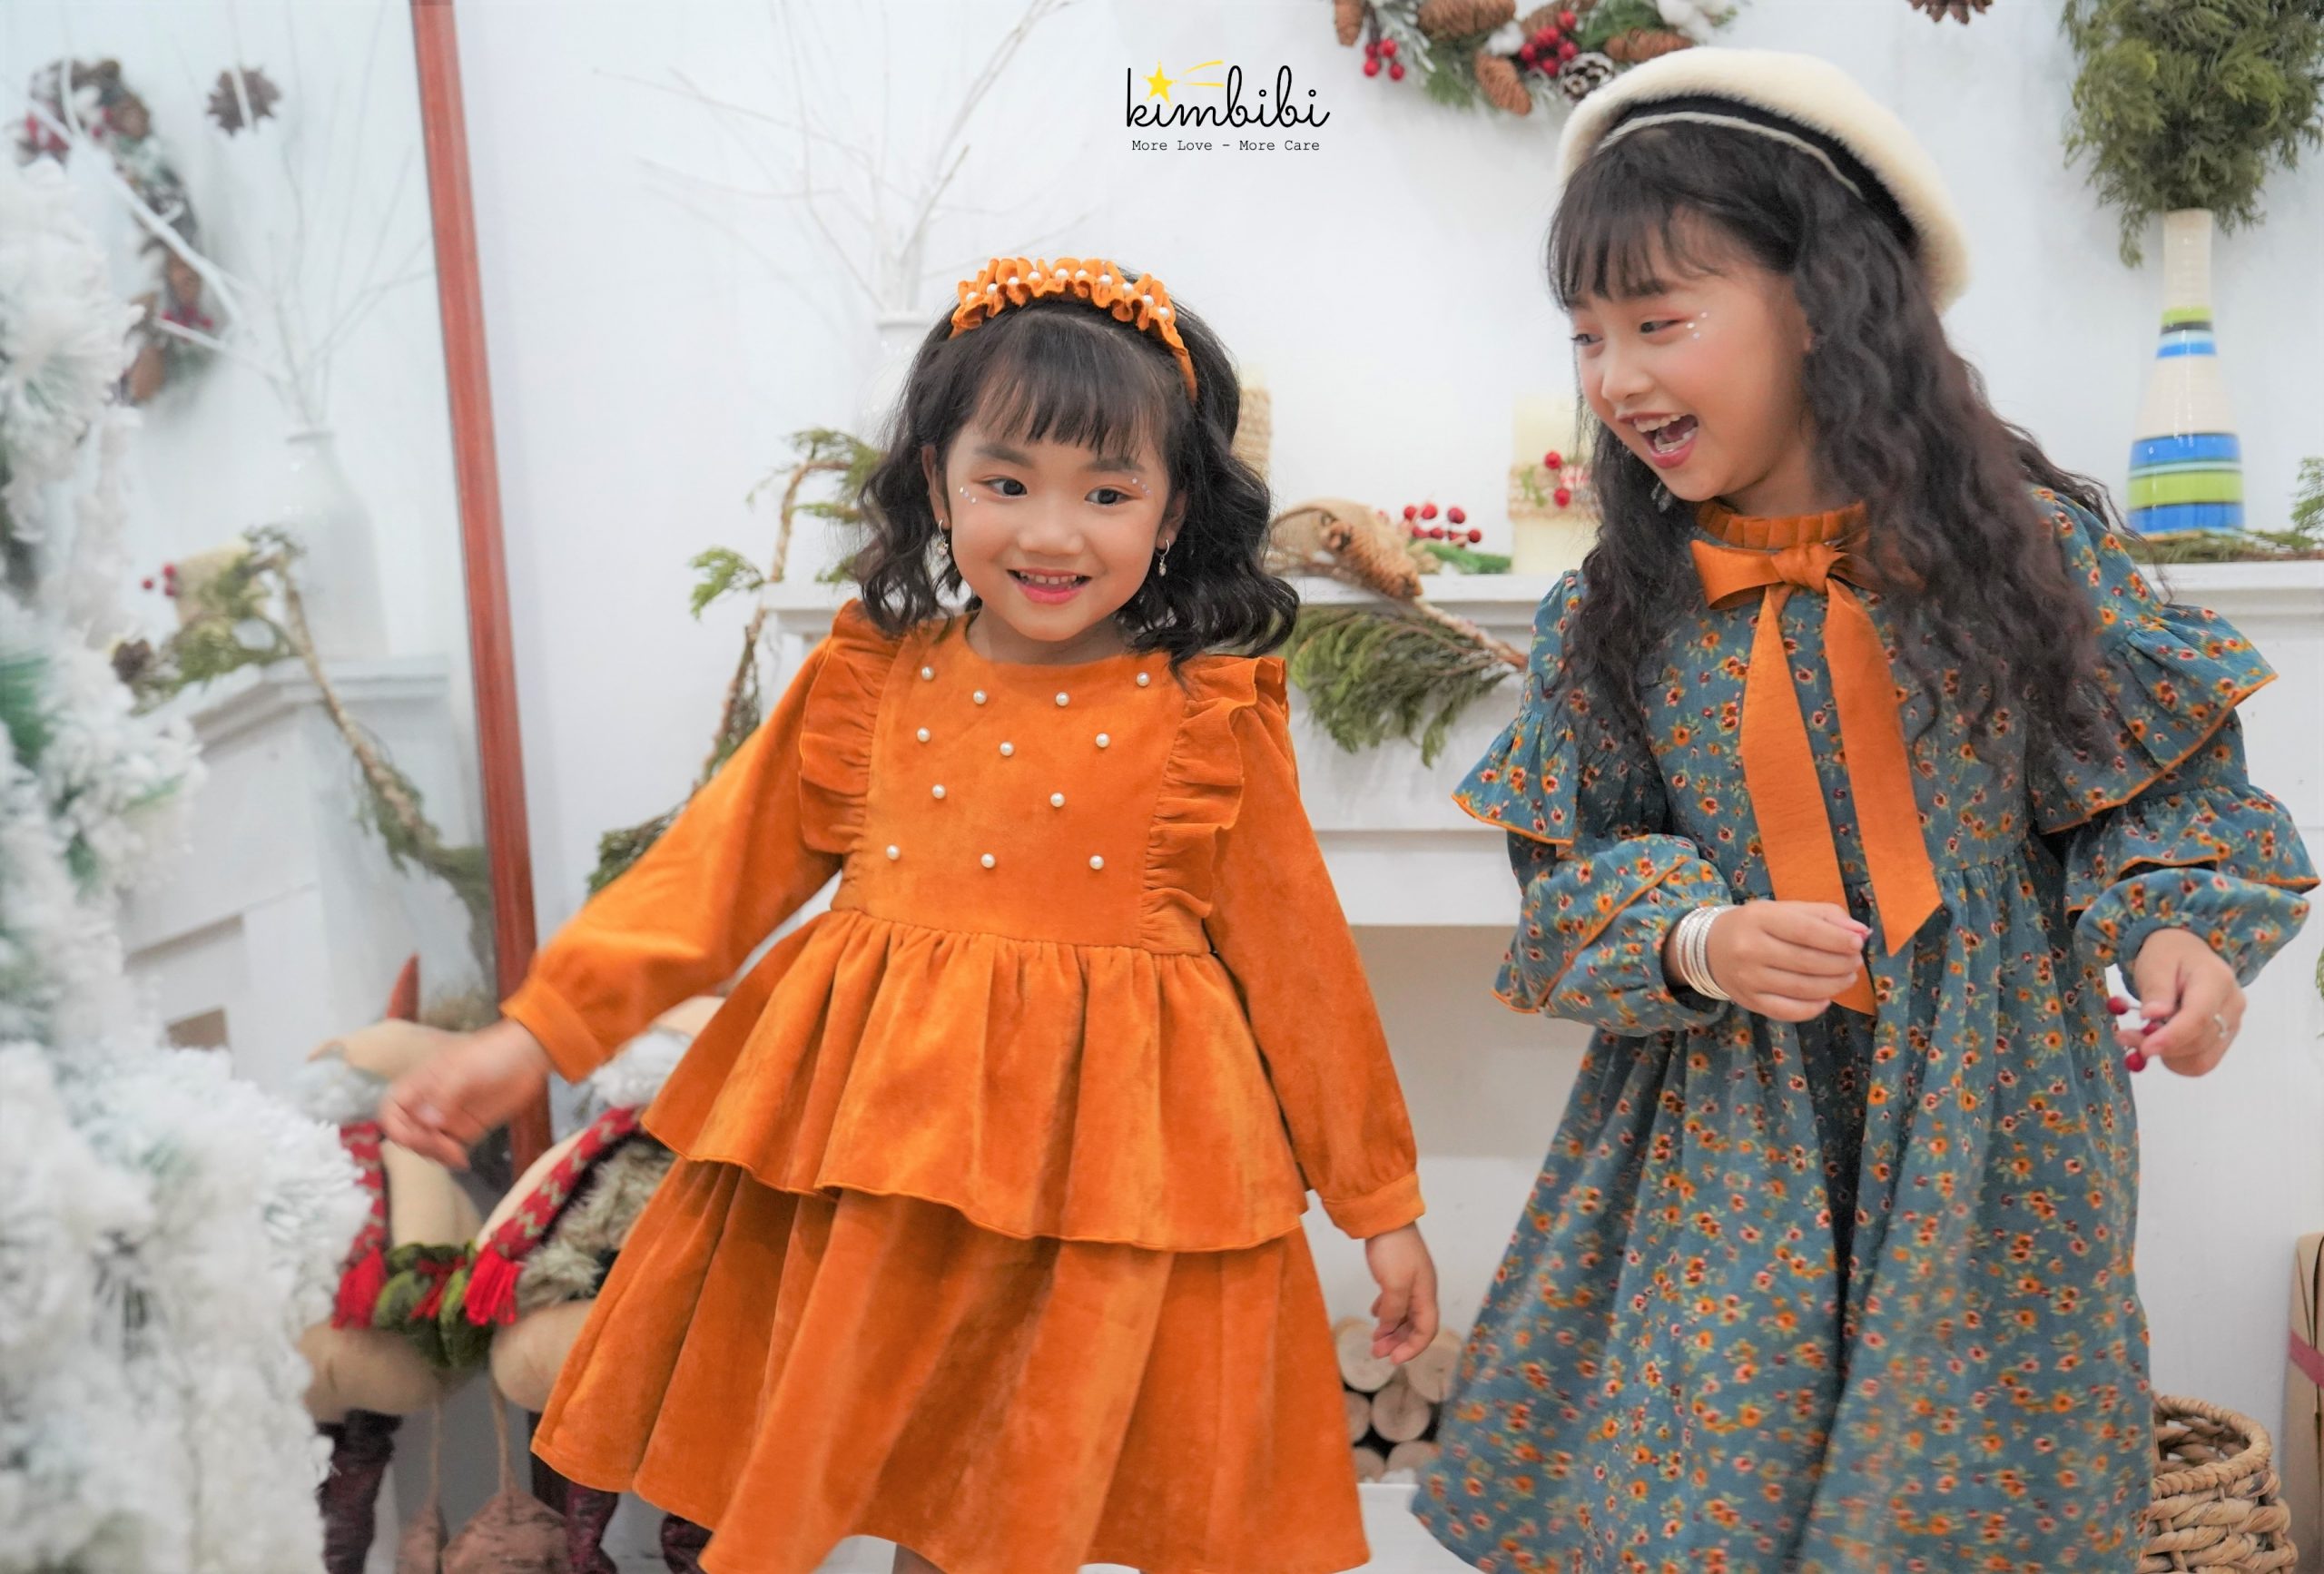 Kimbibi - Rực rỡ bộ sưu tập thời trang bé gái chào Tết Tân Sửu